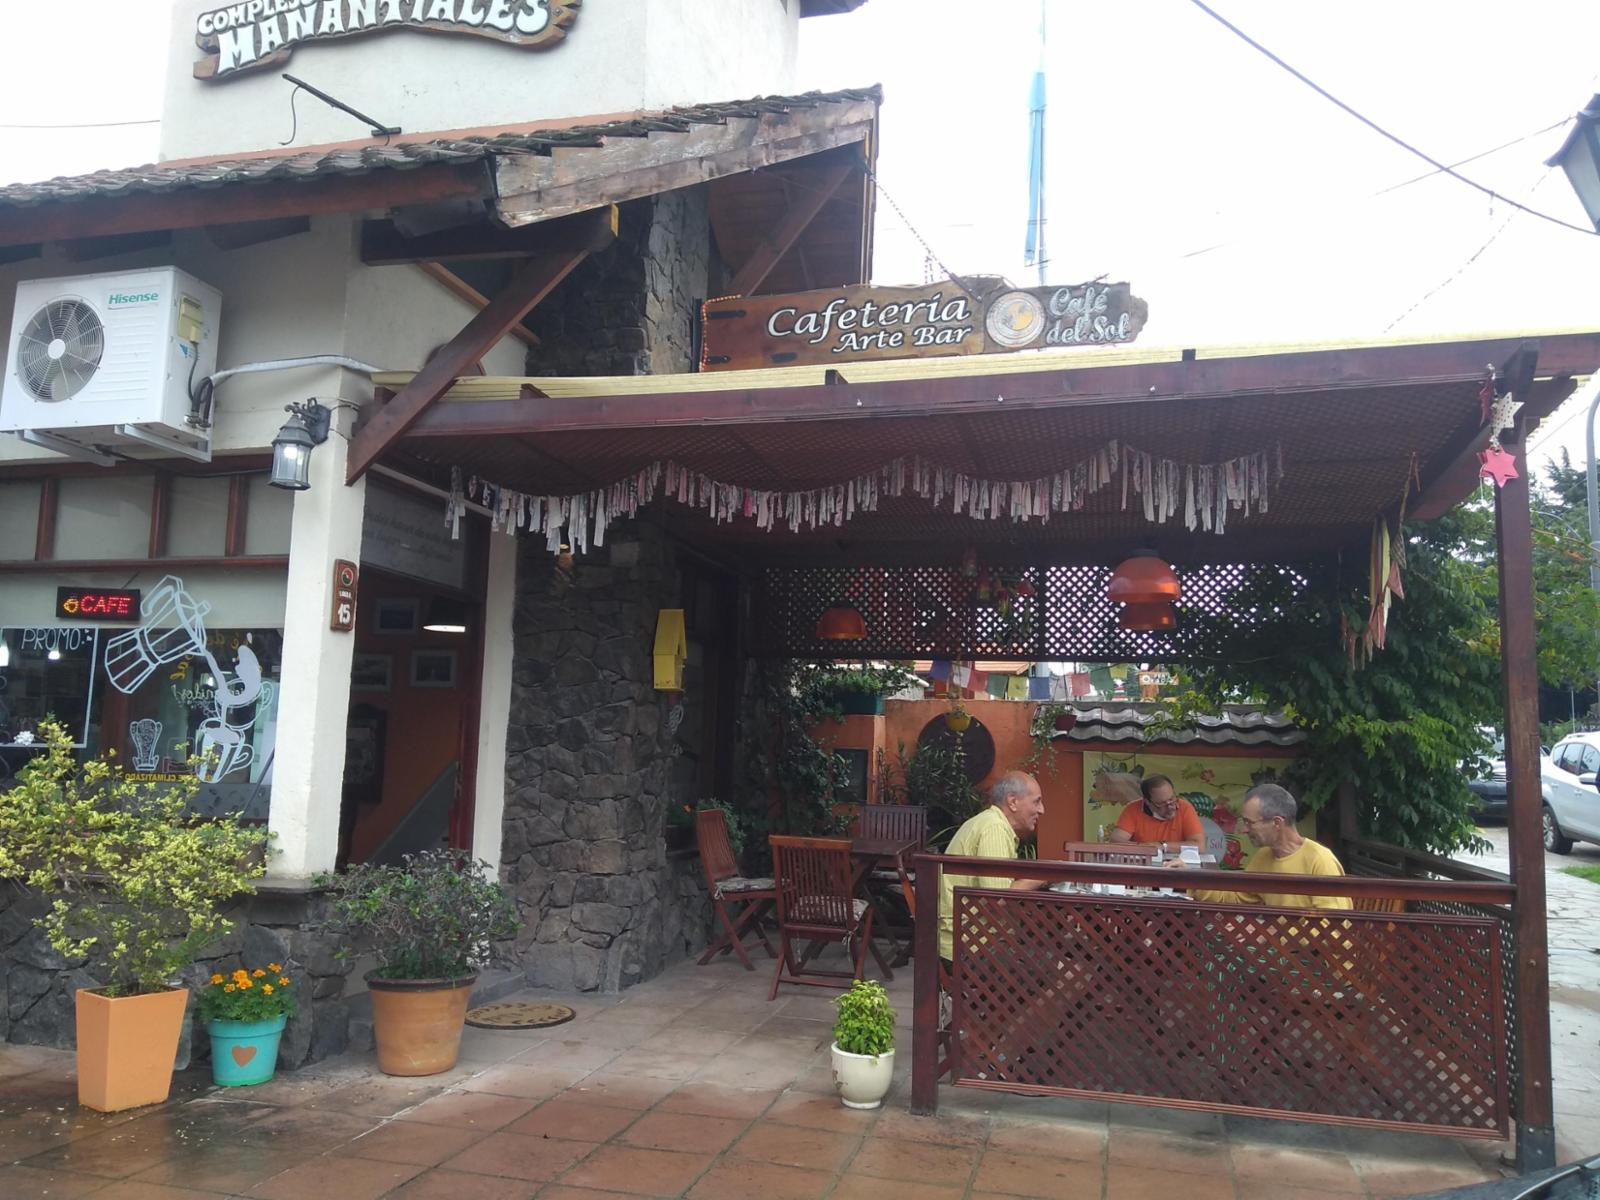 VENTA de Fondo de Comercio + Local - Cafeter�a - Villa General Belgrano